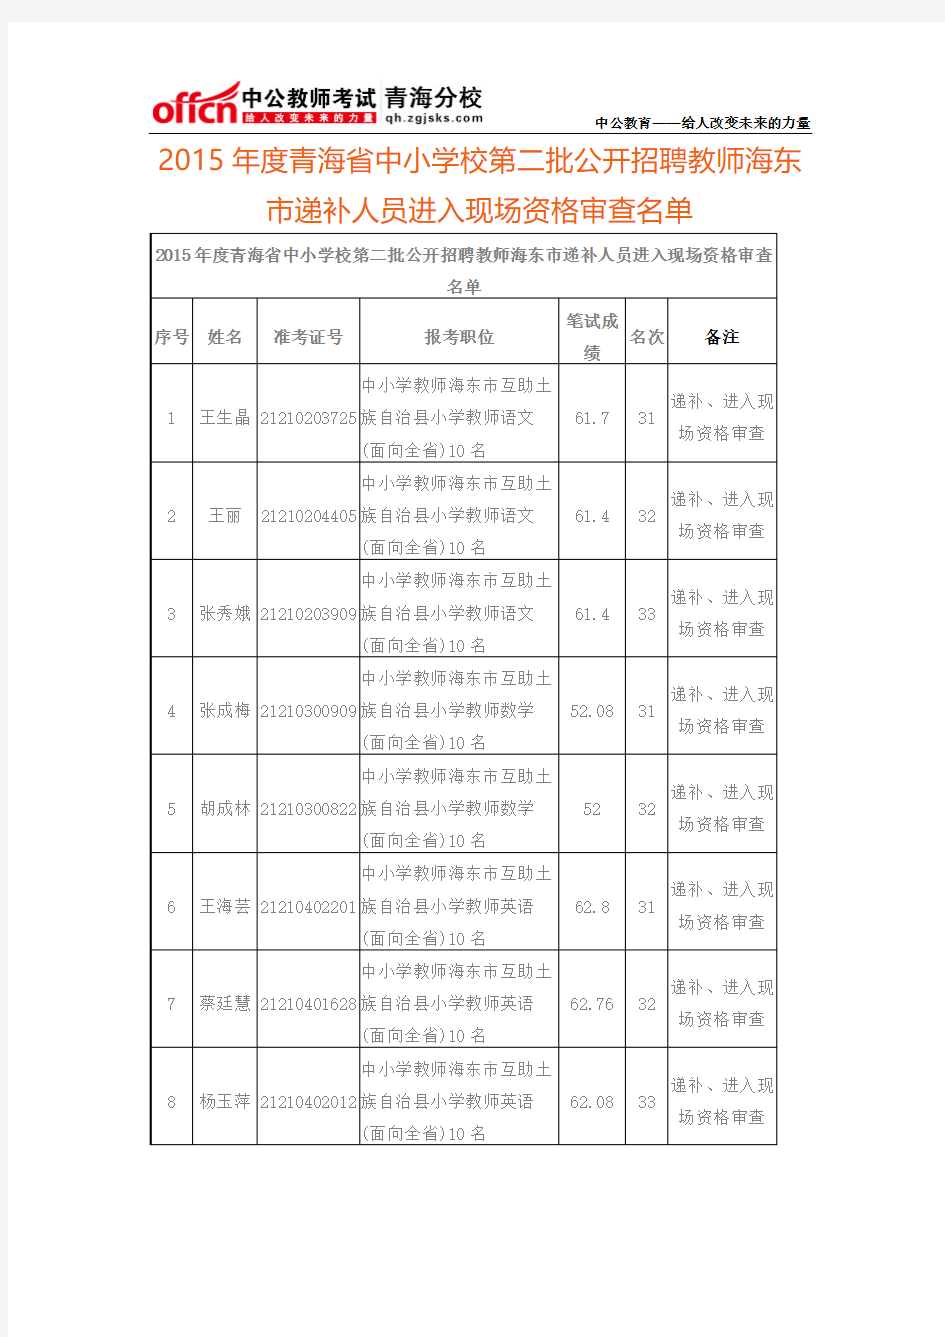 2015年度青海省中小学校第二批公开招聘教师海东市递补人员进入现场资格审查名单